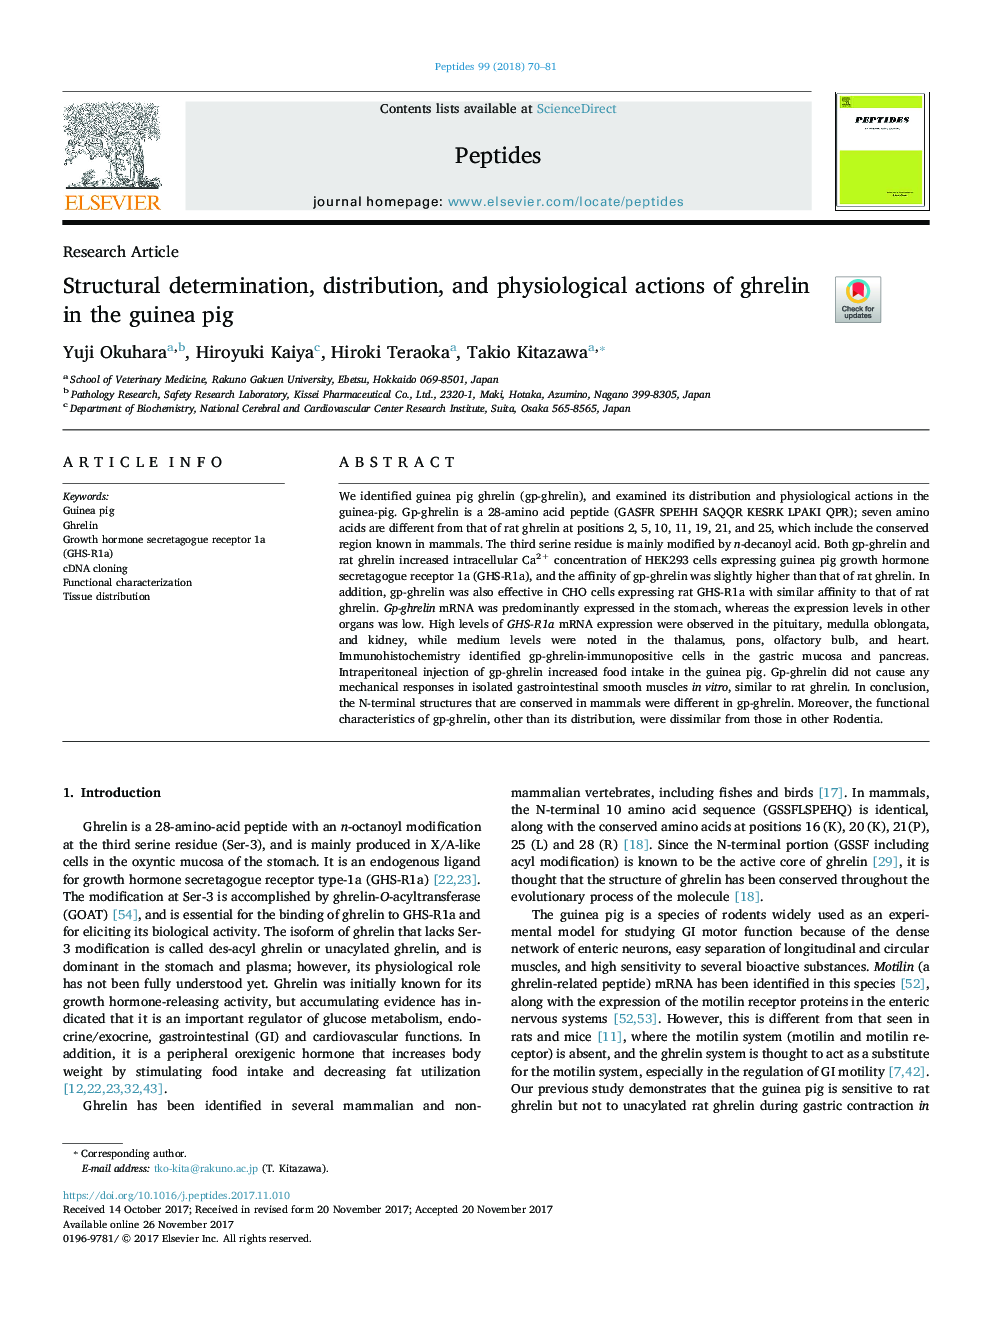 تعیین ساختار، توزیع و فعالیت فیزیولوژیکی گرلین در خوکچه دریایی 